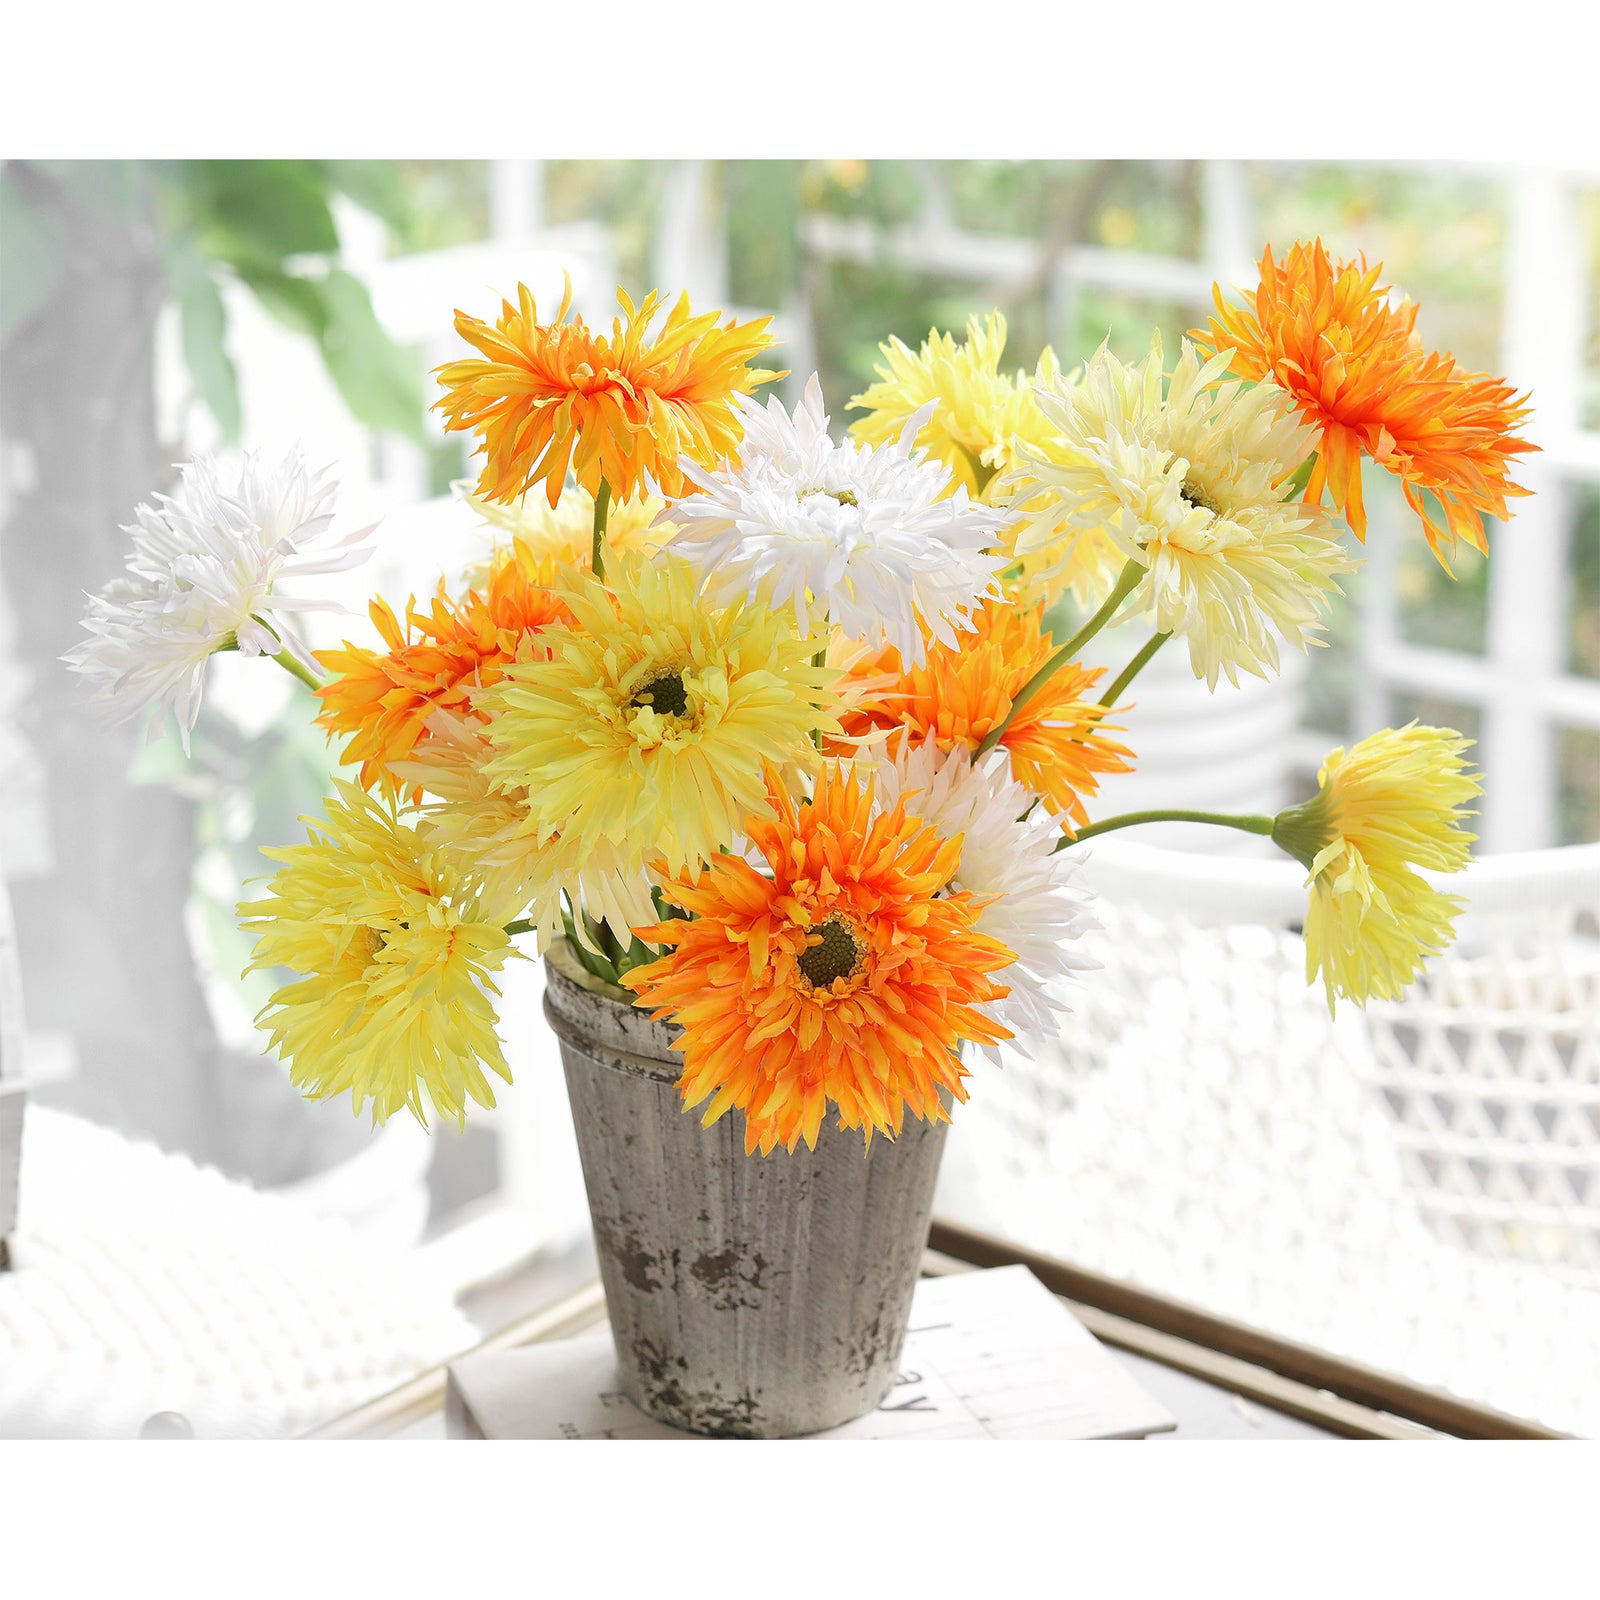 Sunshade Mix Spider Gerbera Daisies Silk Flowers Real Looking Artificial flowers Home Décor 16.5'' (9 Stems) FiveSeasonStuff